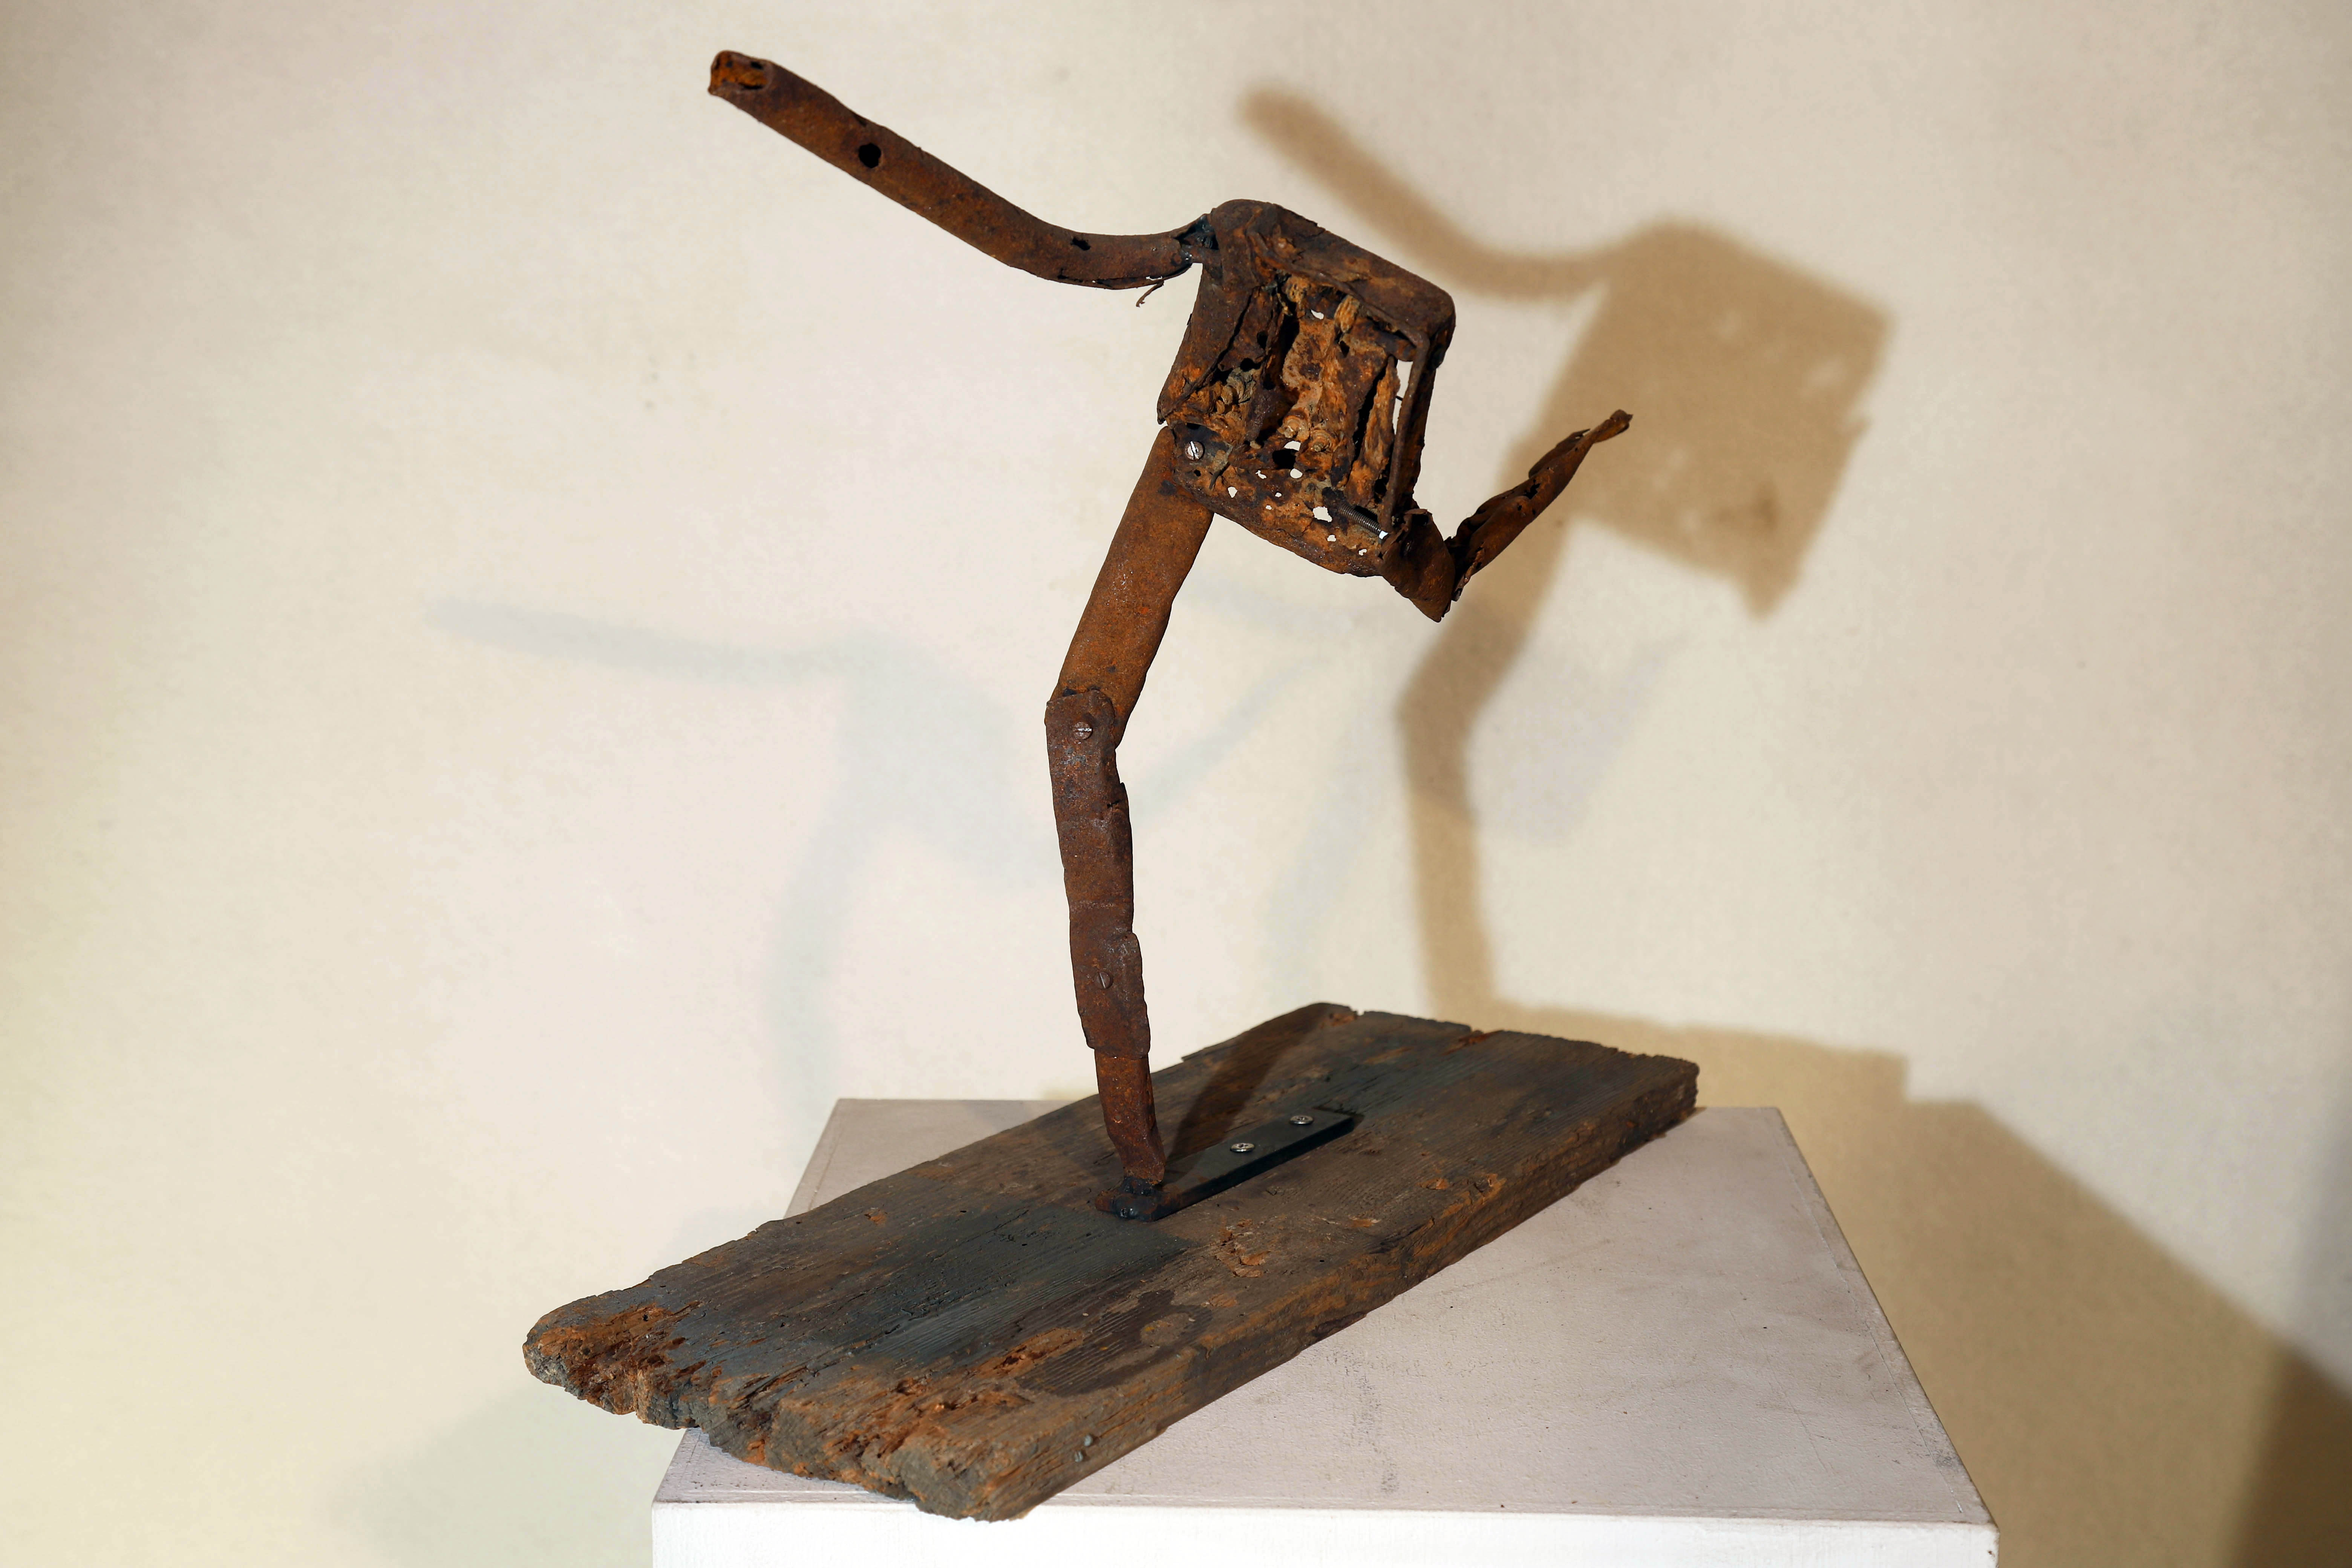 Antonio Panzuto - sculture Ruggini - Figura danzante 2 - Rusty sculpture Dancing figure